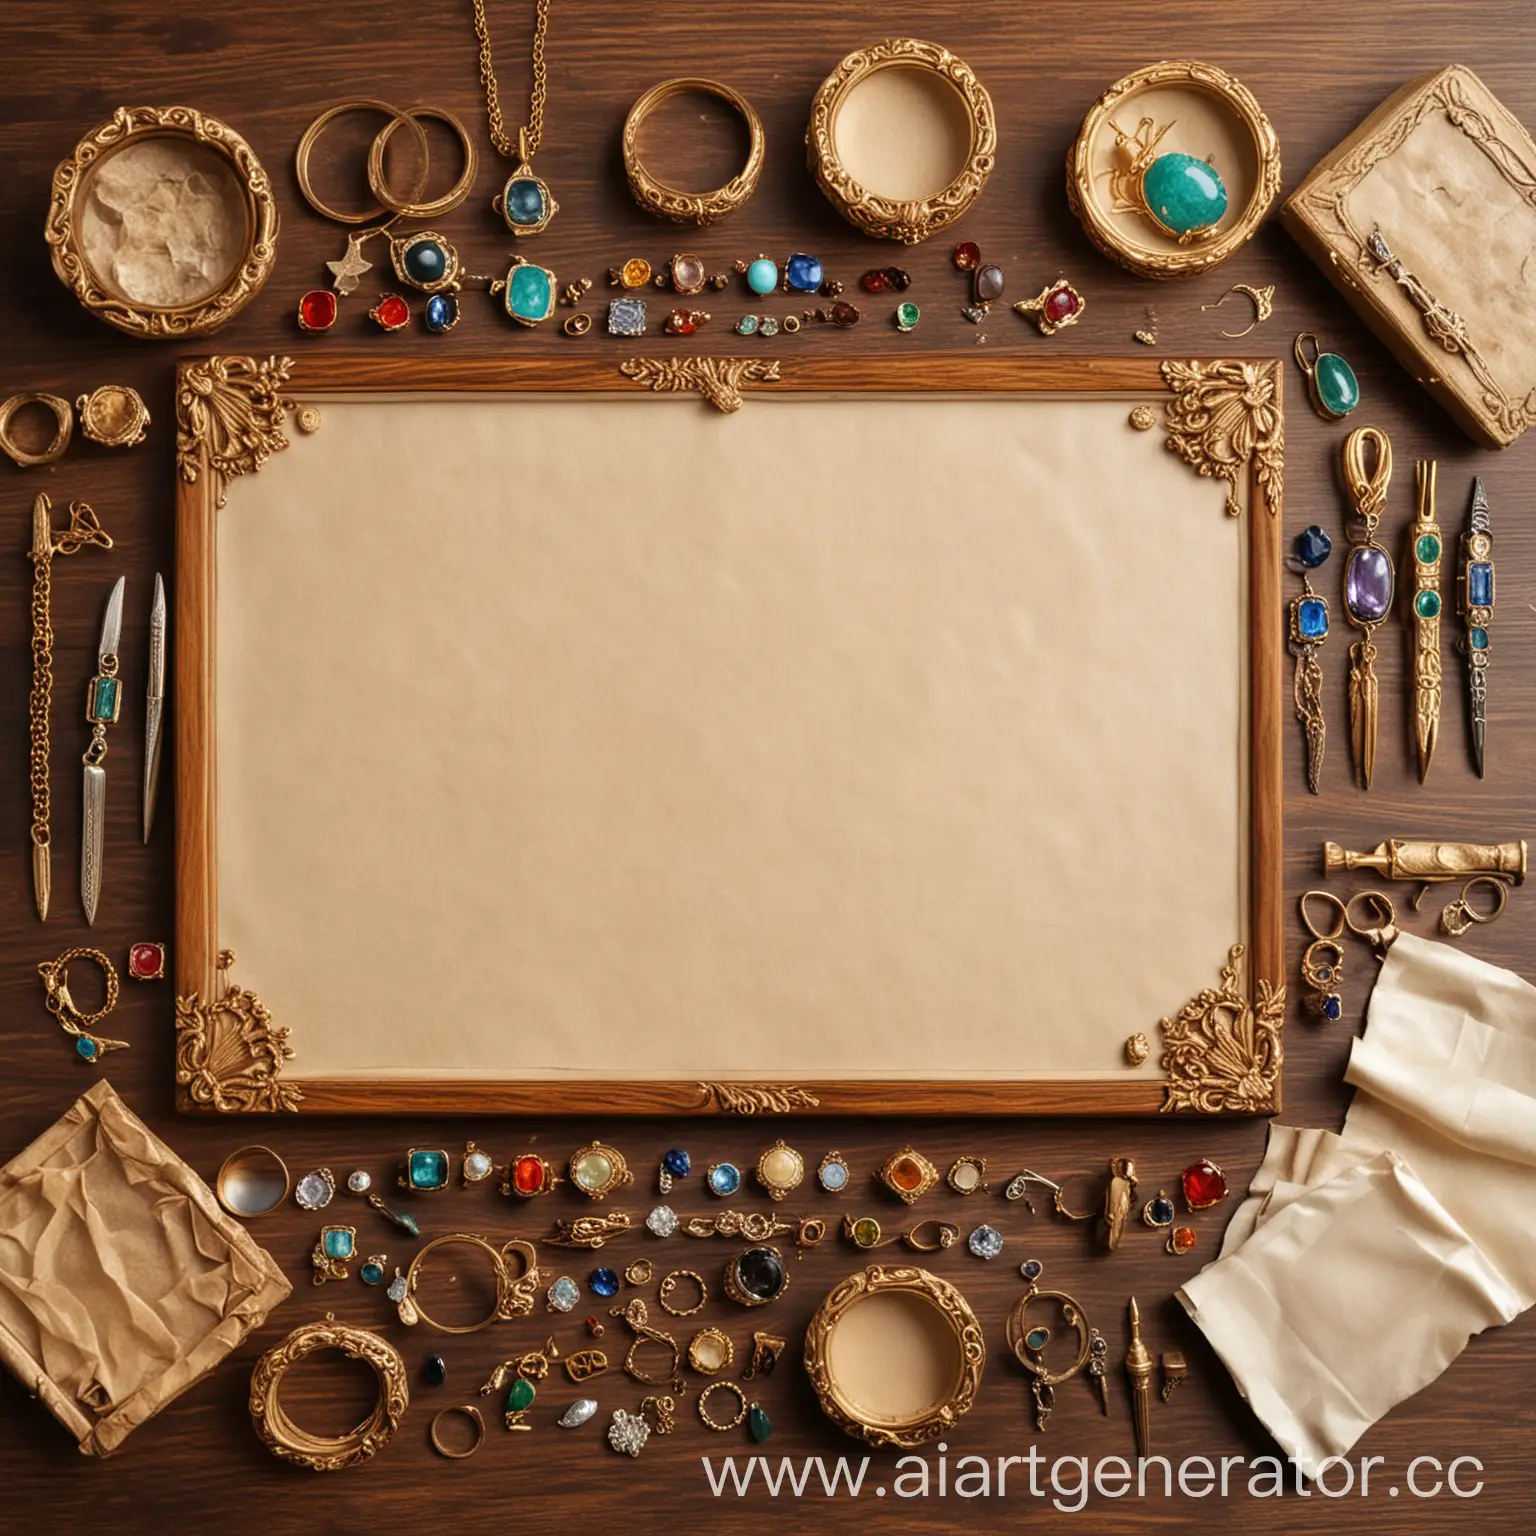 деревянный стол на котором:  украшения из золота мужские и женские, перстни, кулоны, драгоценные камни без оправы, кристаллы минералов, ювелирные инструменты, листы пергамента